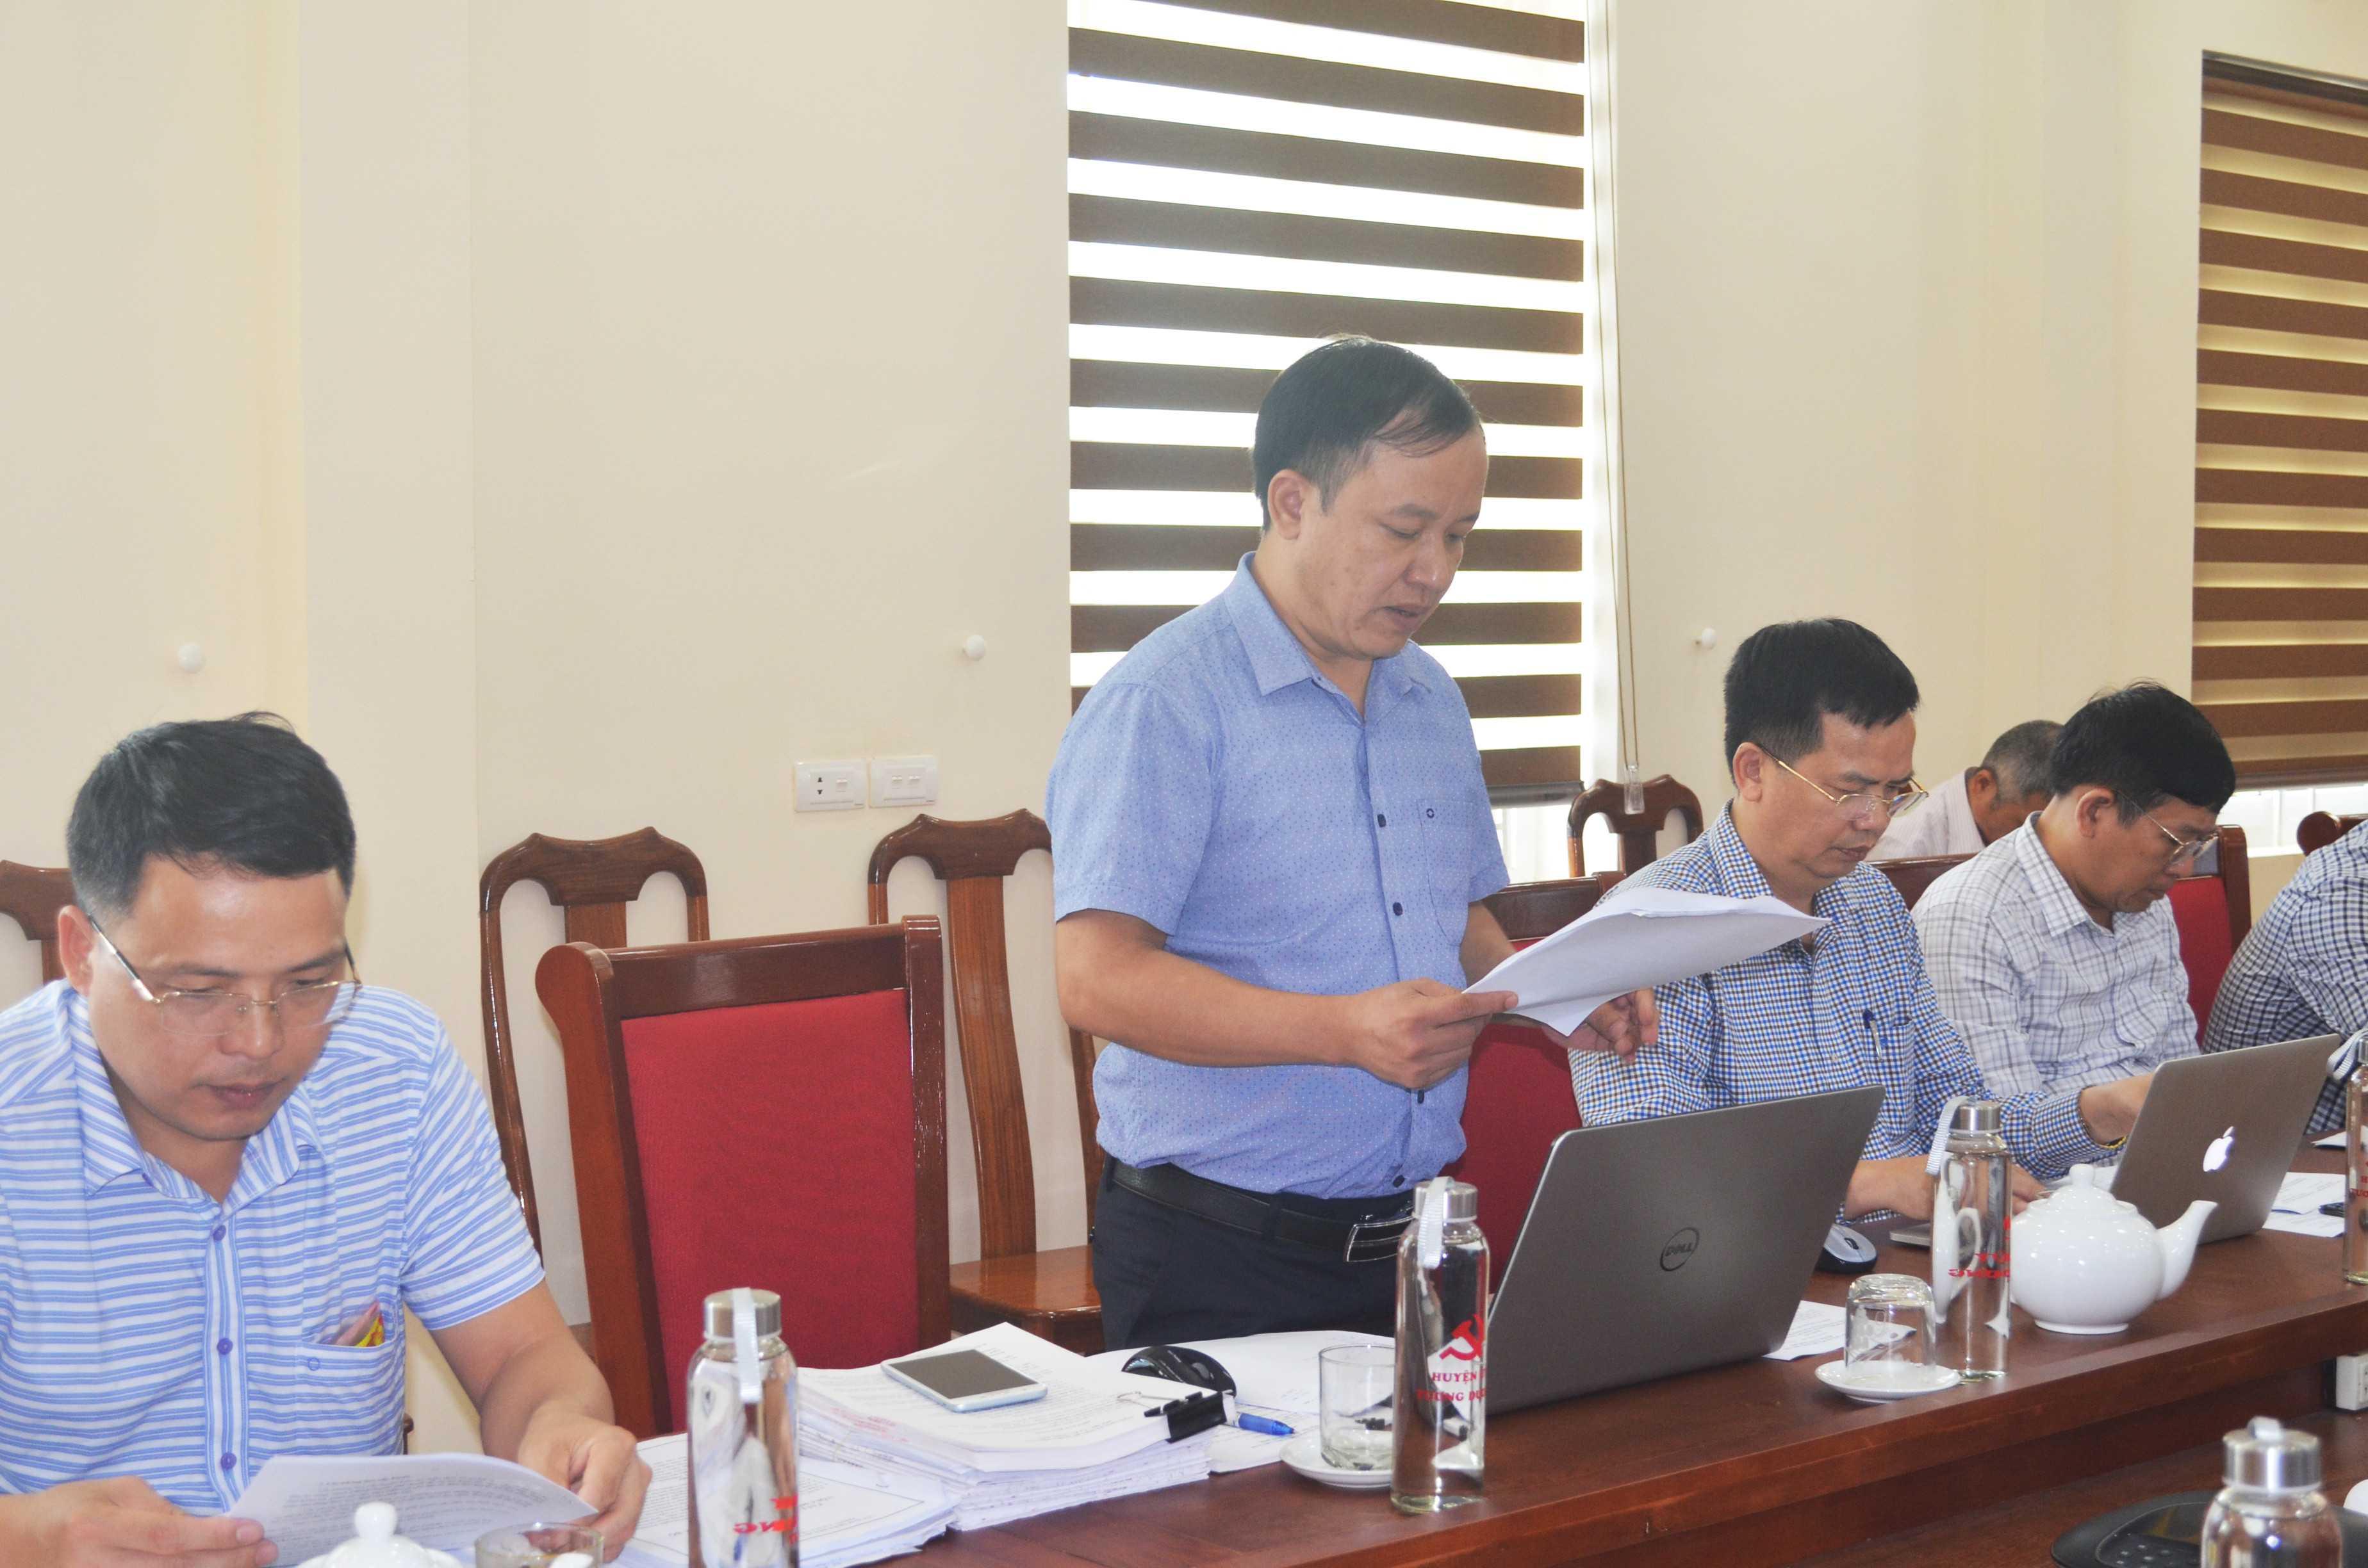 Phó Tổng Giám đốc VNPD, ông Phan Thế Chuyền trình bày Báo cáosố 1536/BC-VNPD báo cáo kết quả thực hiện và kế hoạch giải quyết các tồn tại, vướng mắc trong công tác bồi thường, di dân, tái định cư dự án thủy điện Khe Bố